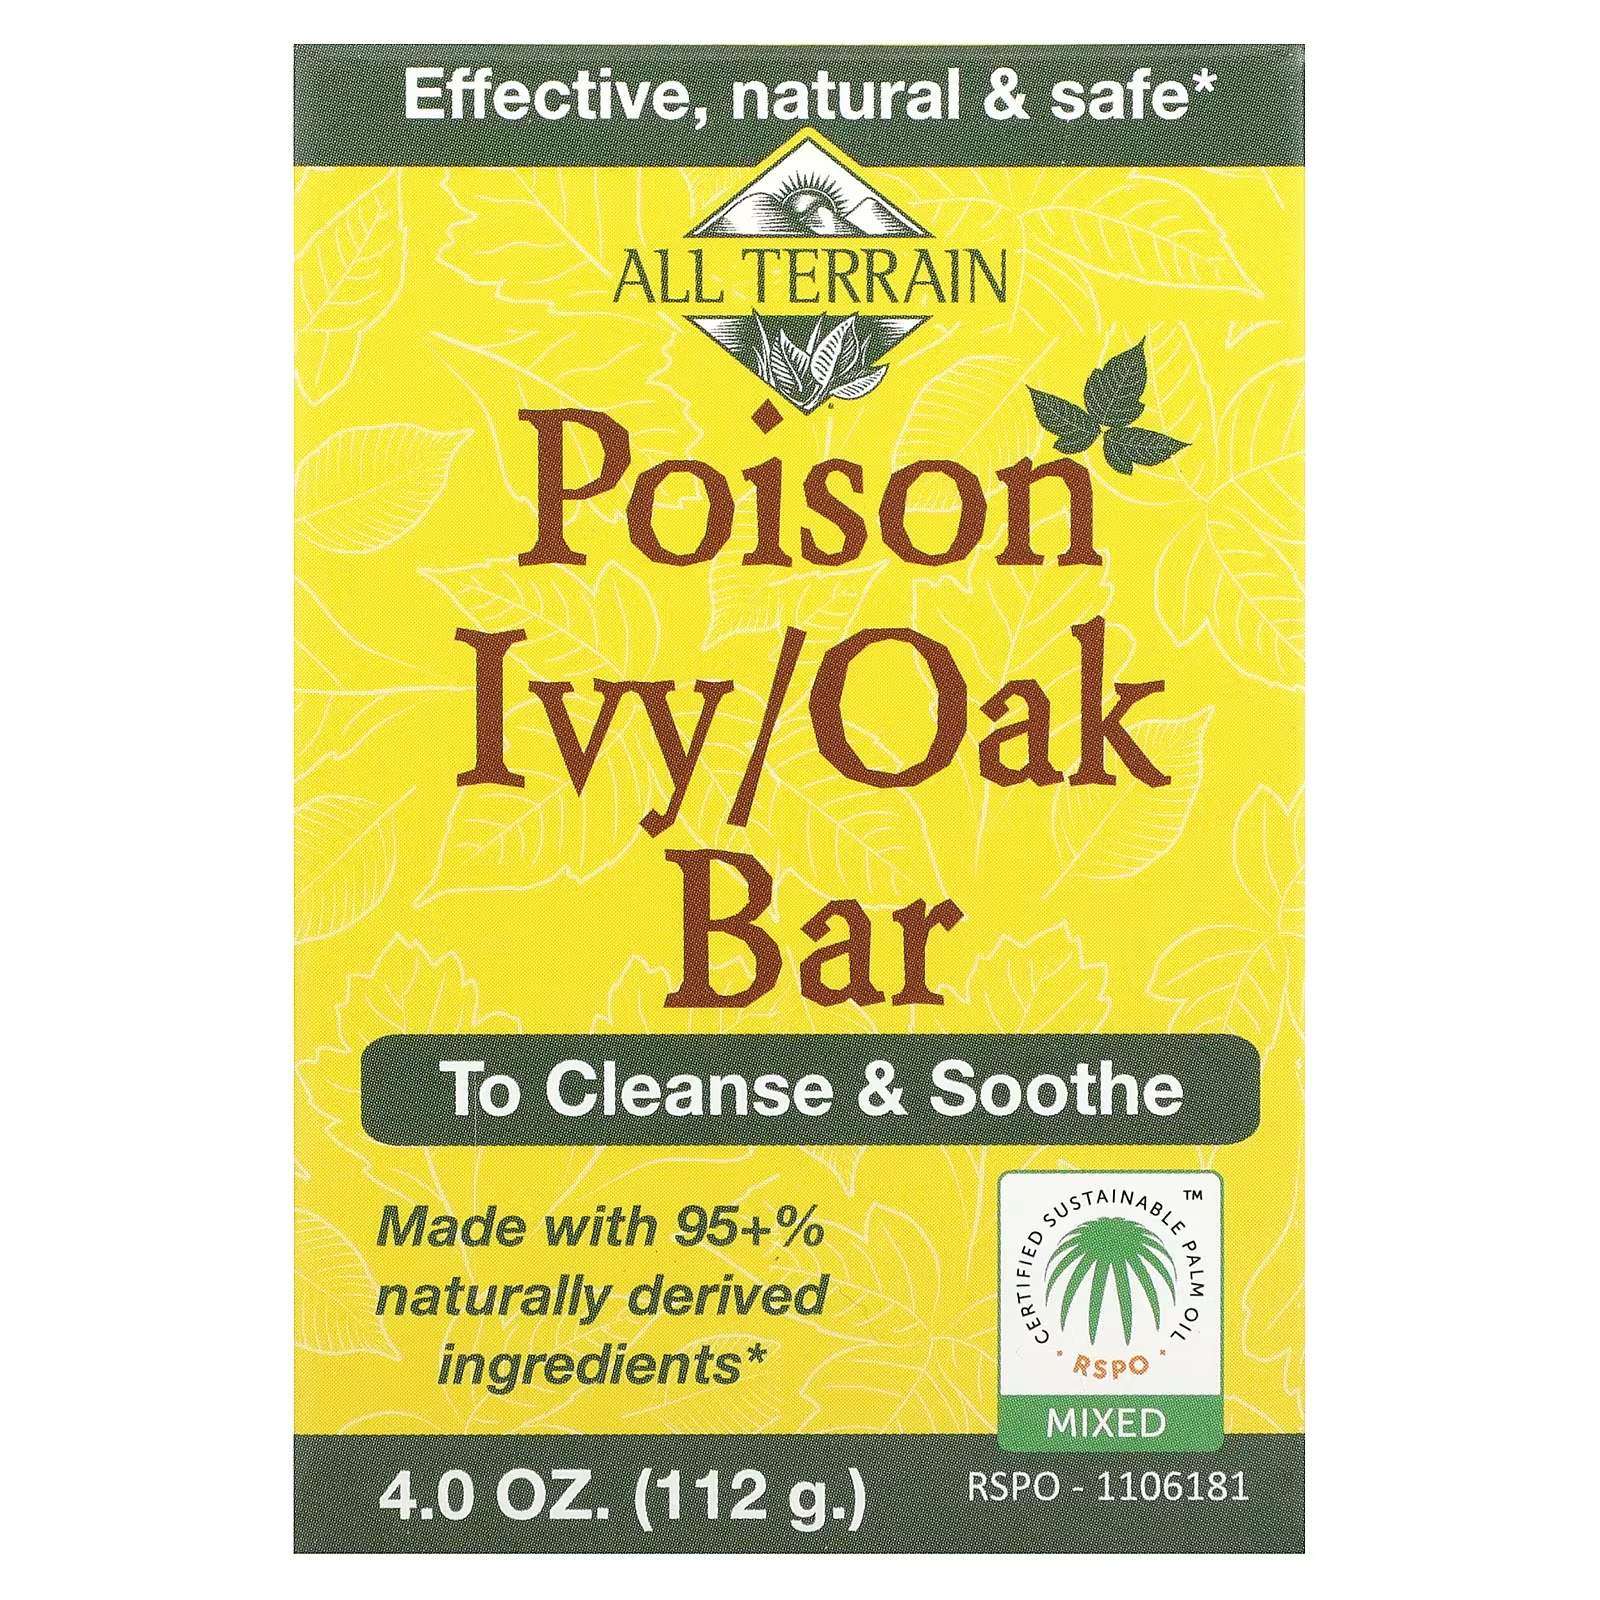 Батончик All Terrain Poison Ivy/Oak, 4 унции (112 г) о2 натуральные продукты масло